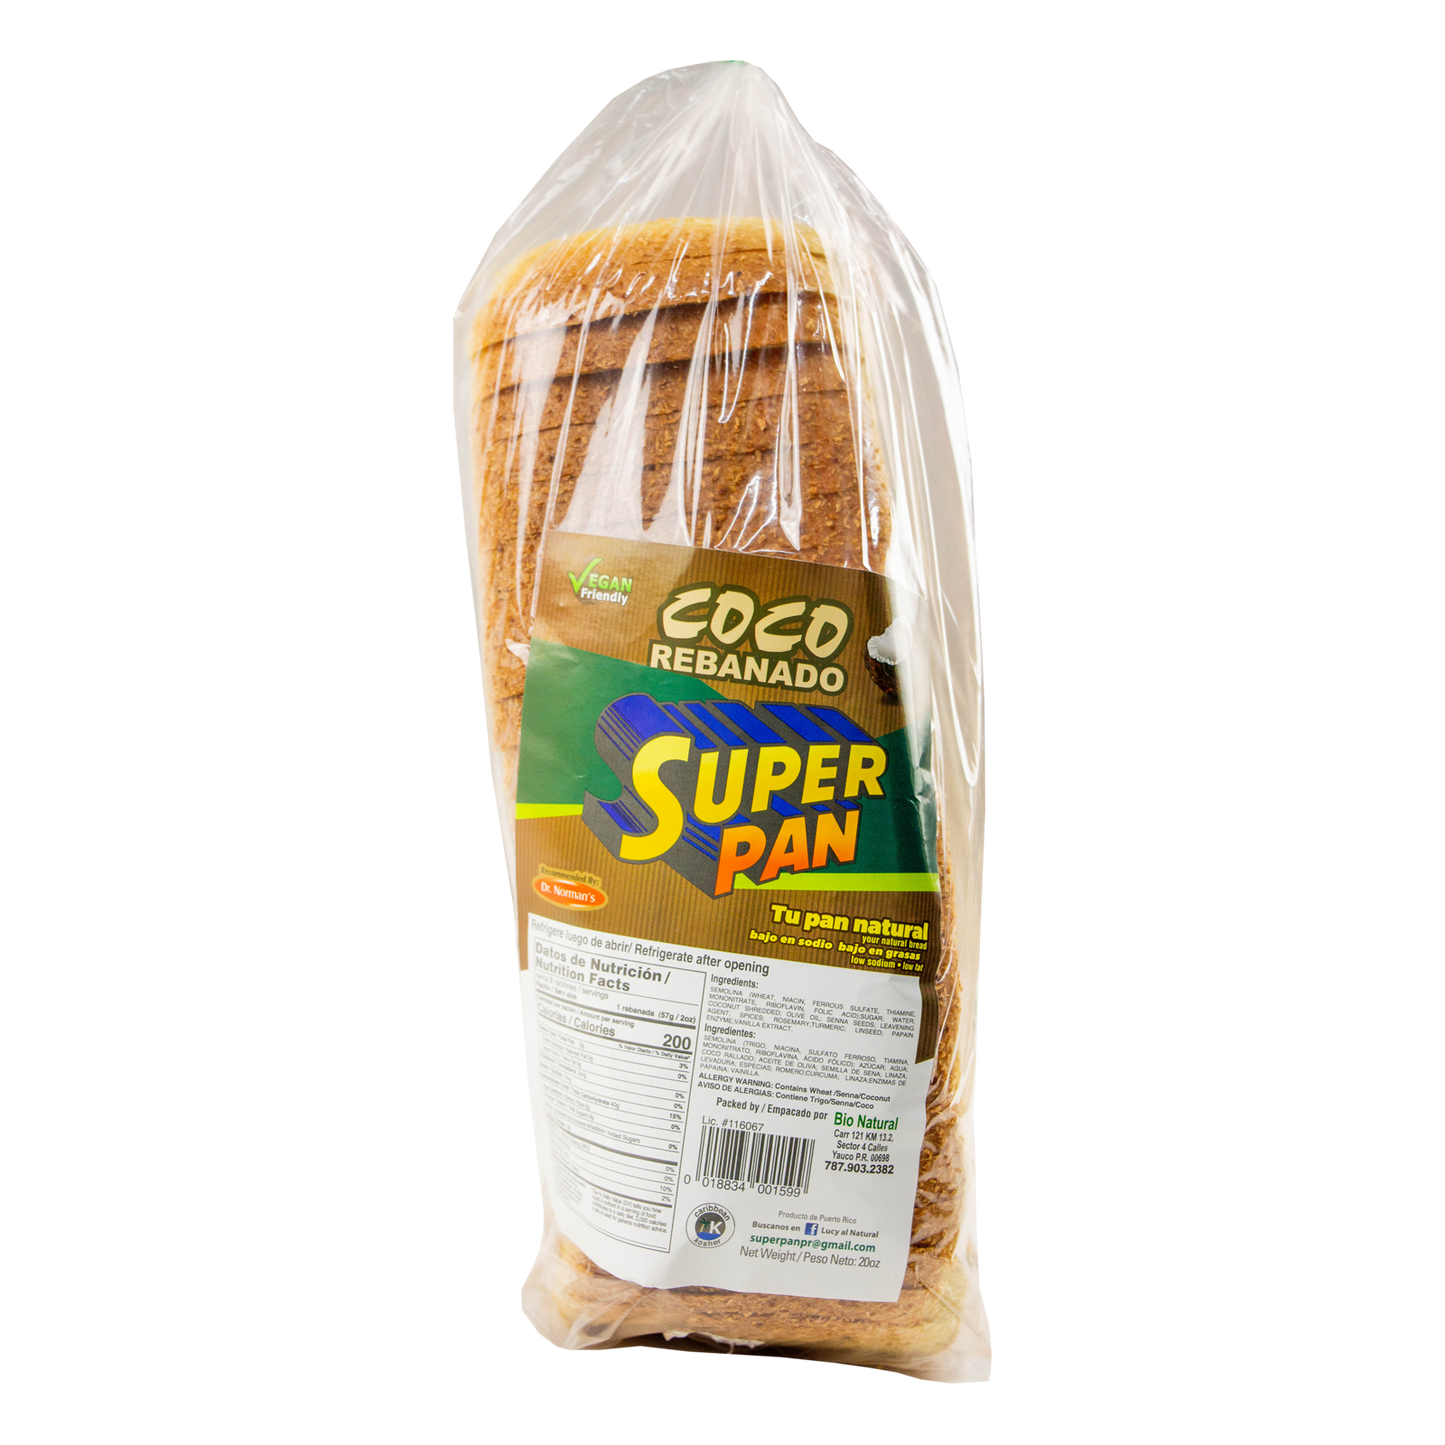 Super Pan - Pan de Coco Rebanado (In Store Pickup Only)